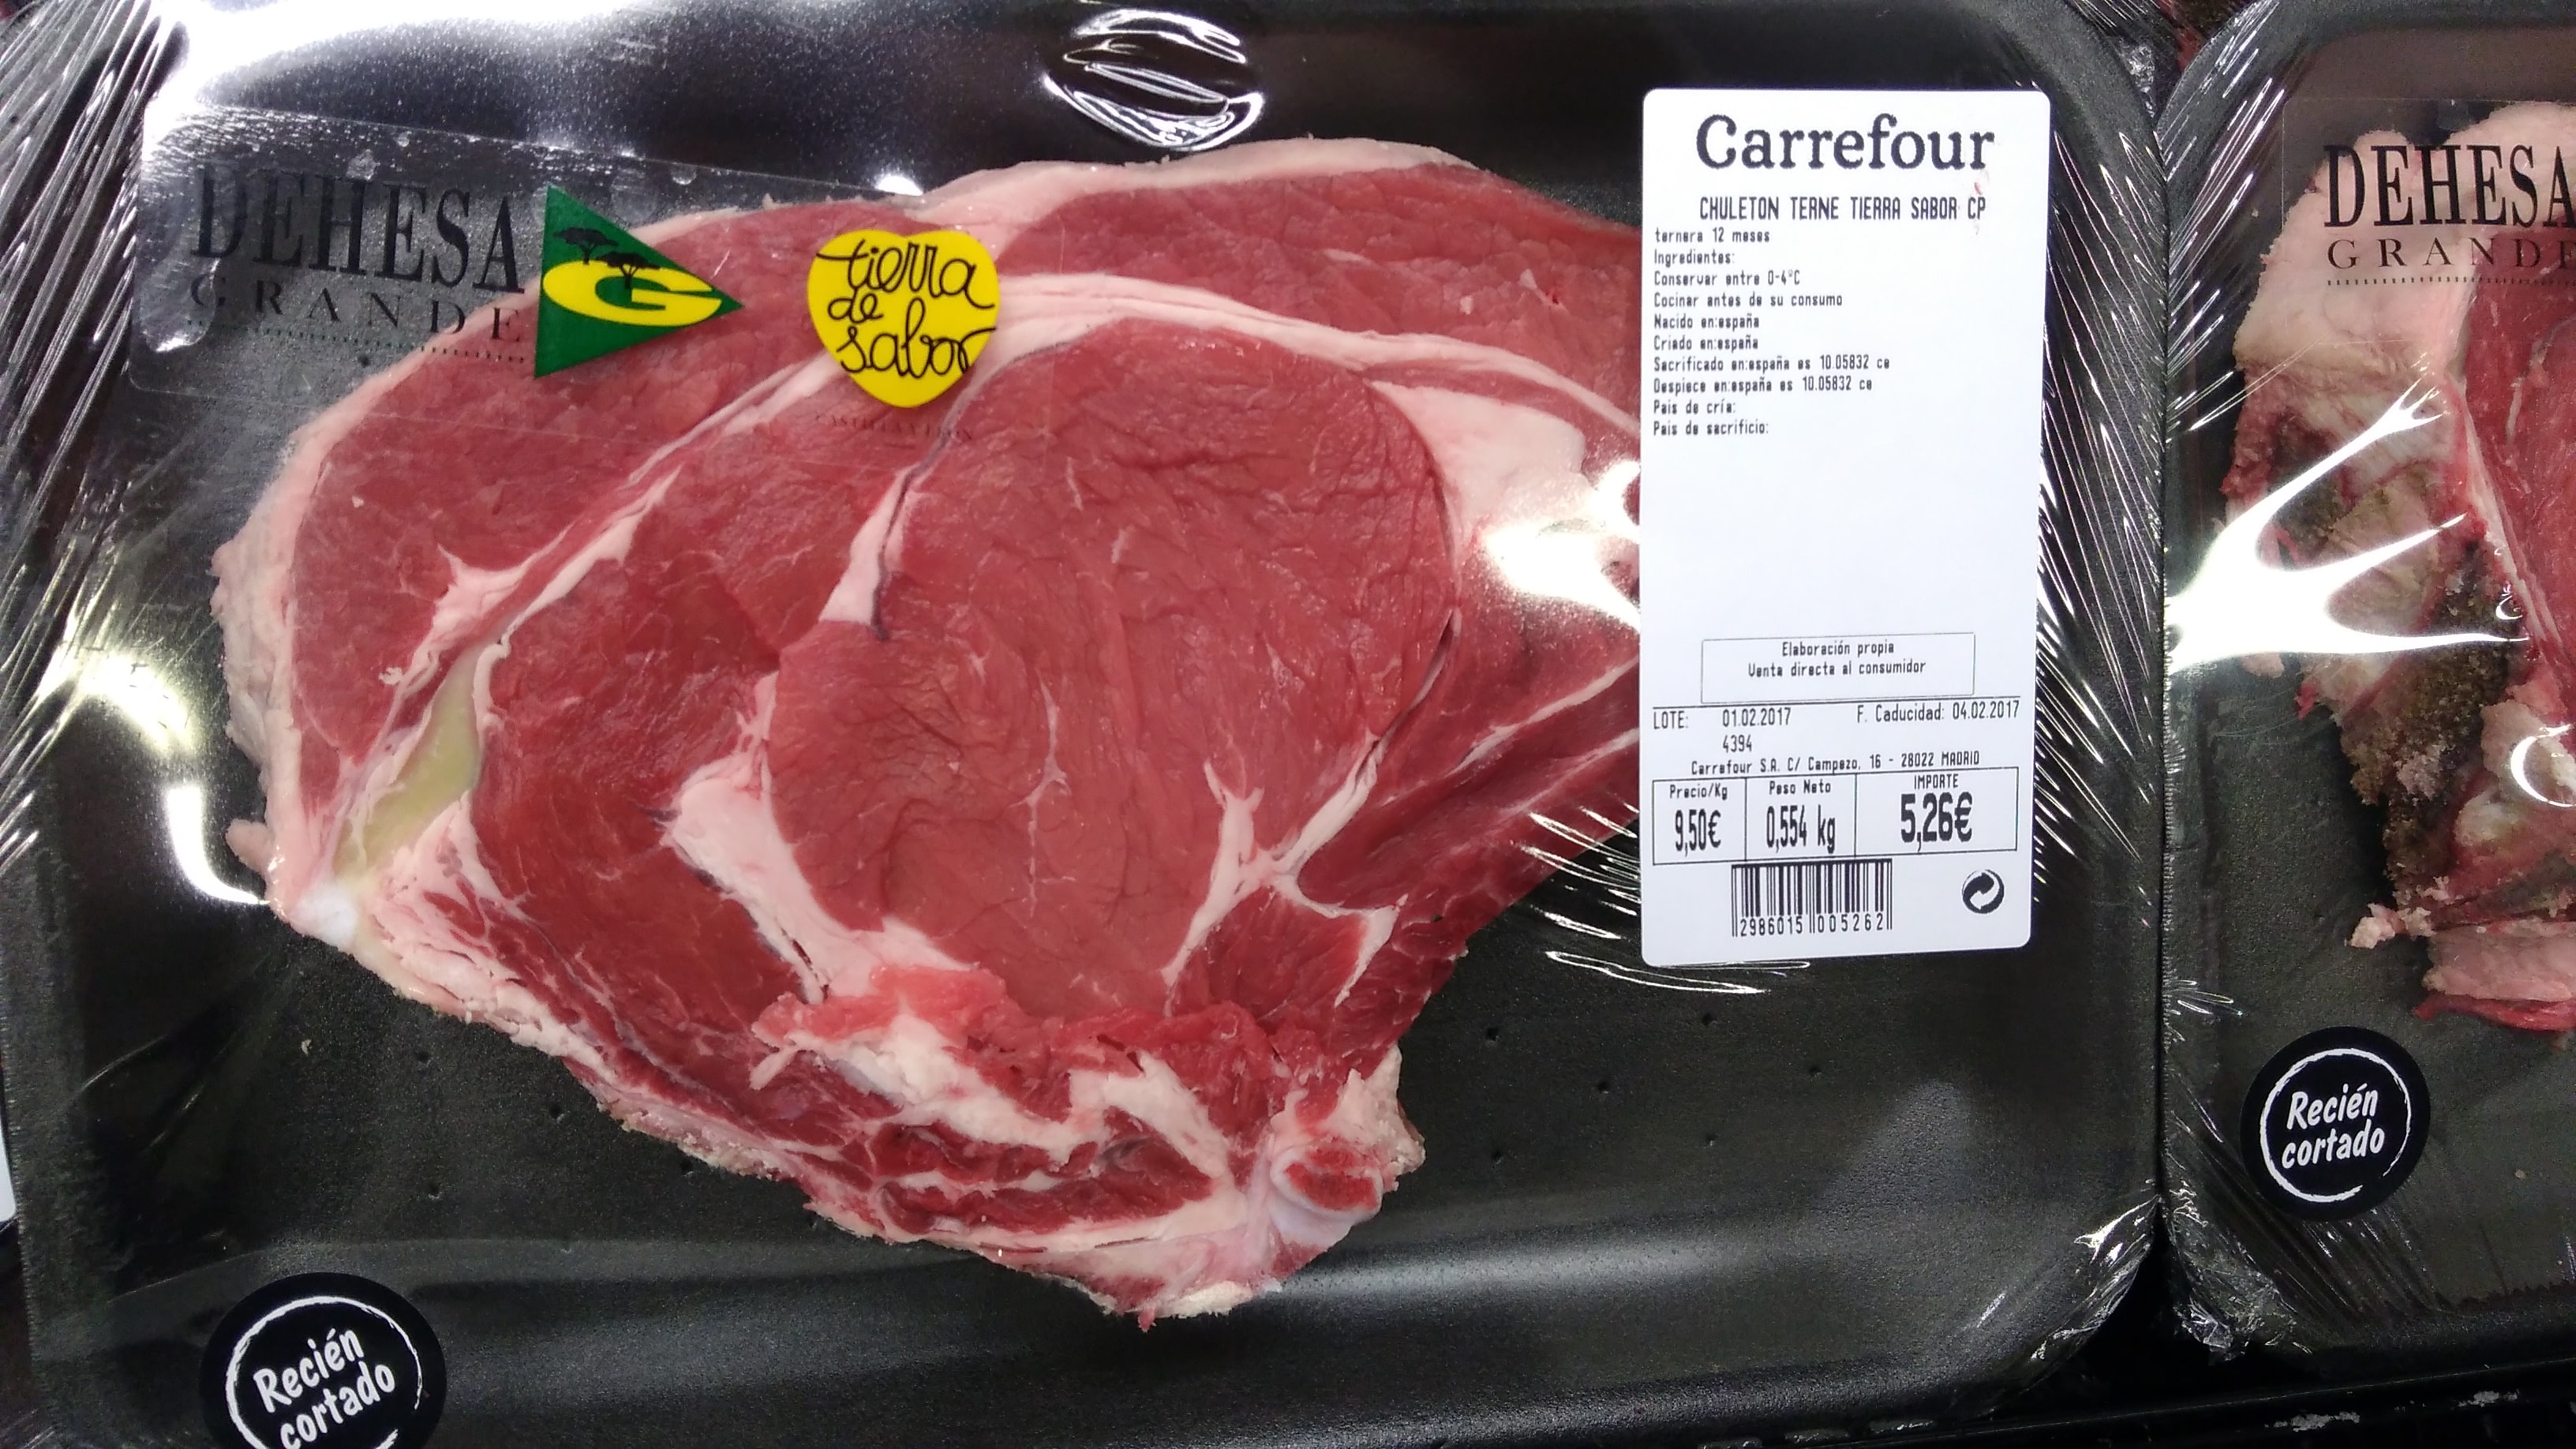 La Grande, nuevo proveedor de carne de Carrefour - Vacuno de élite